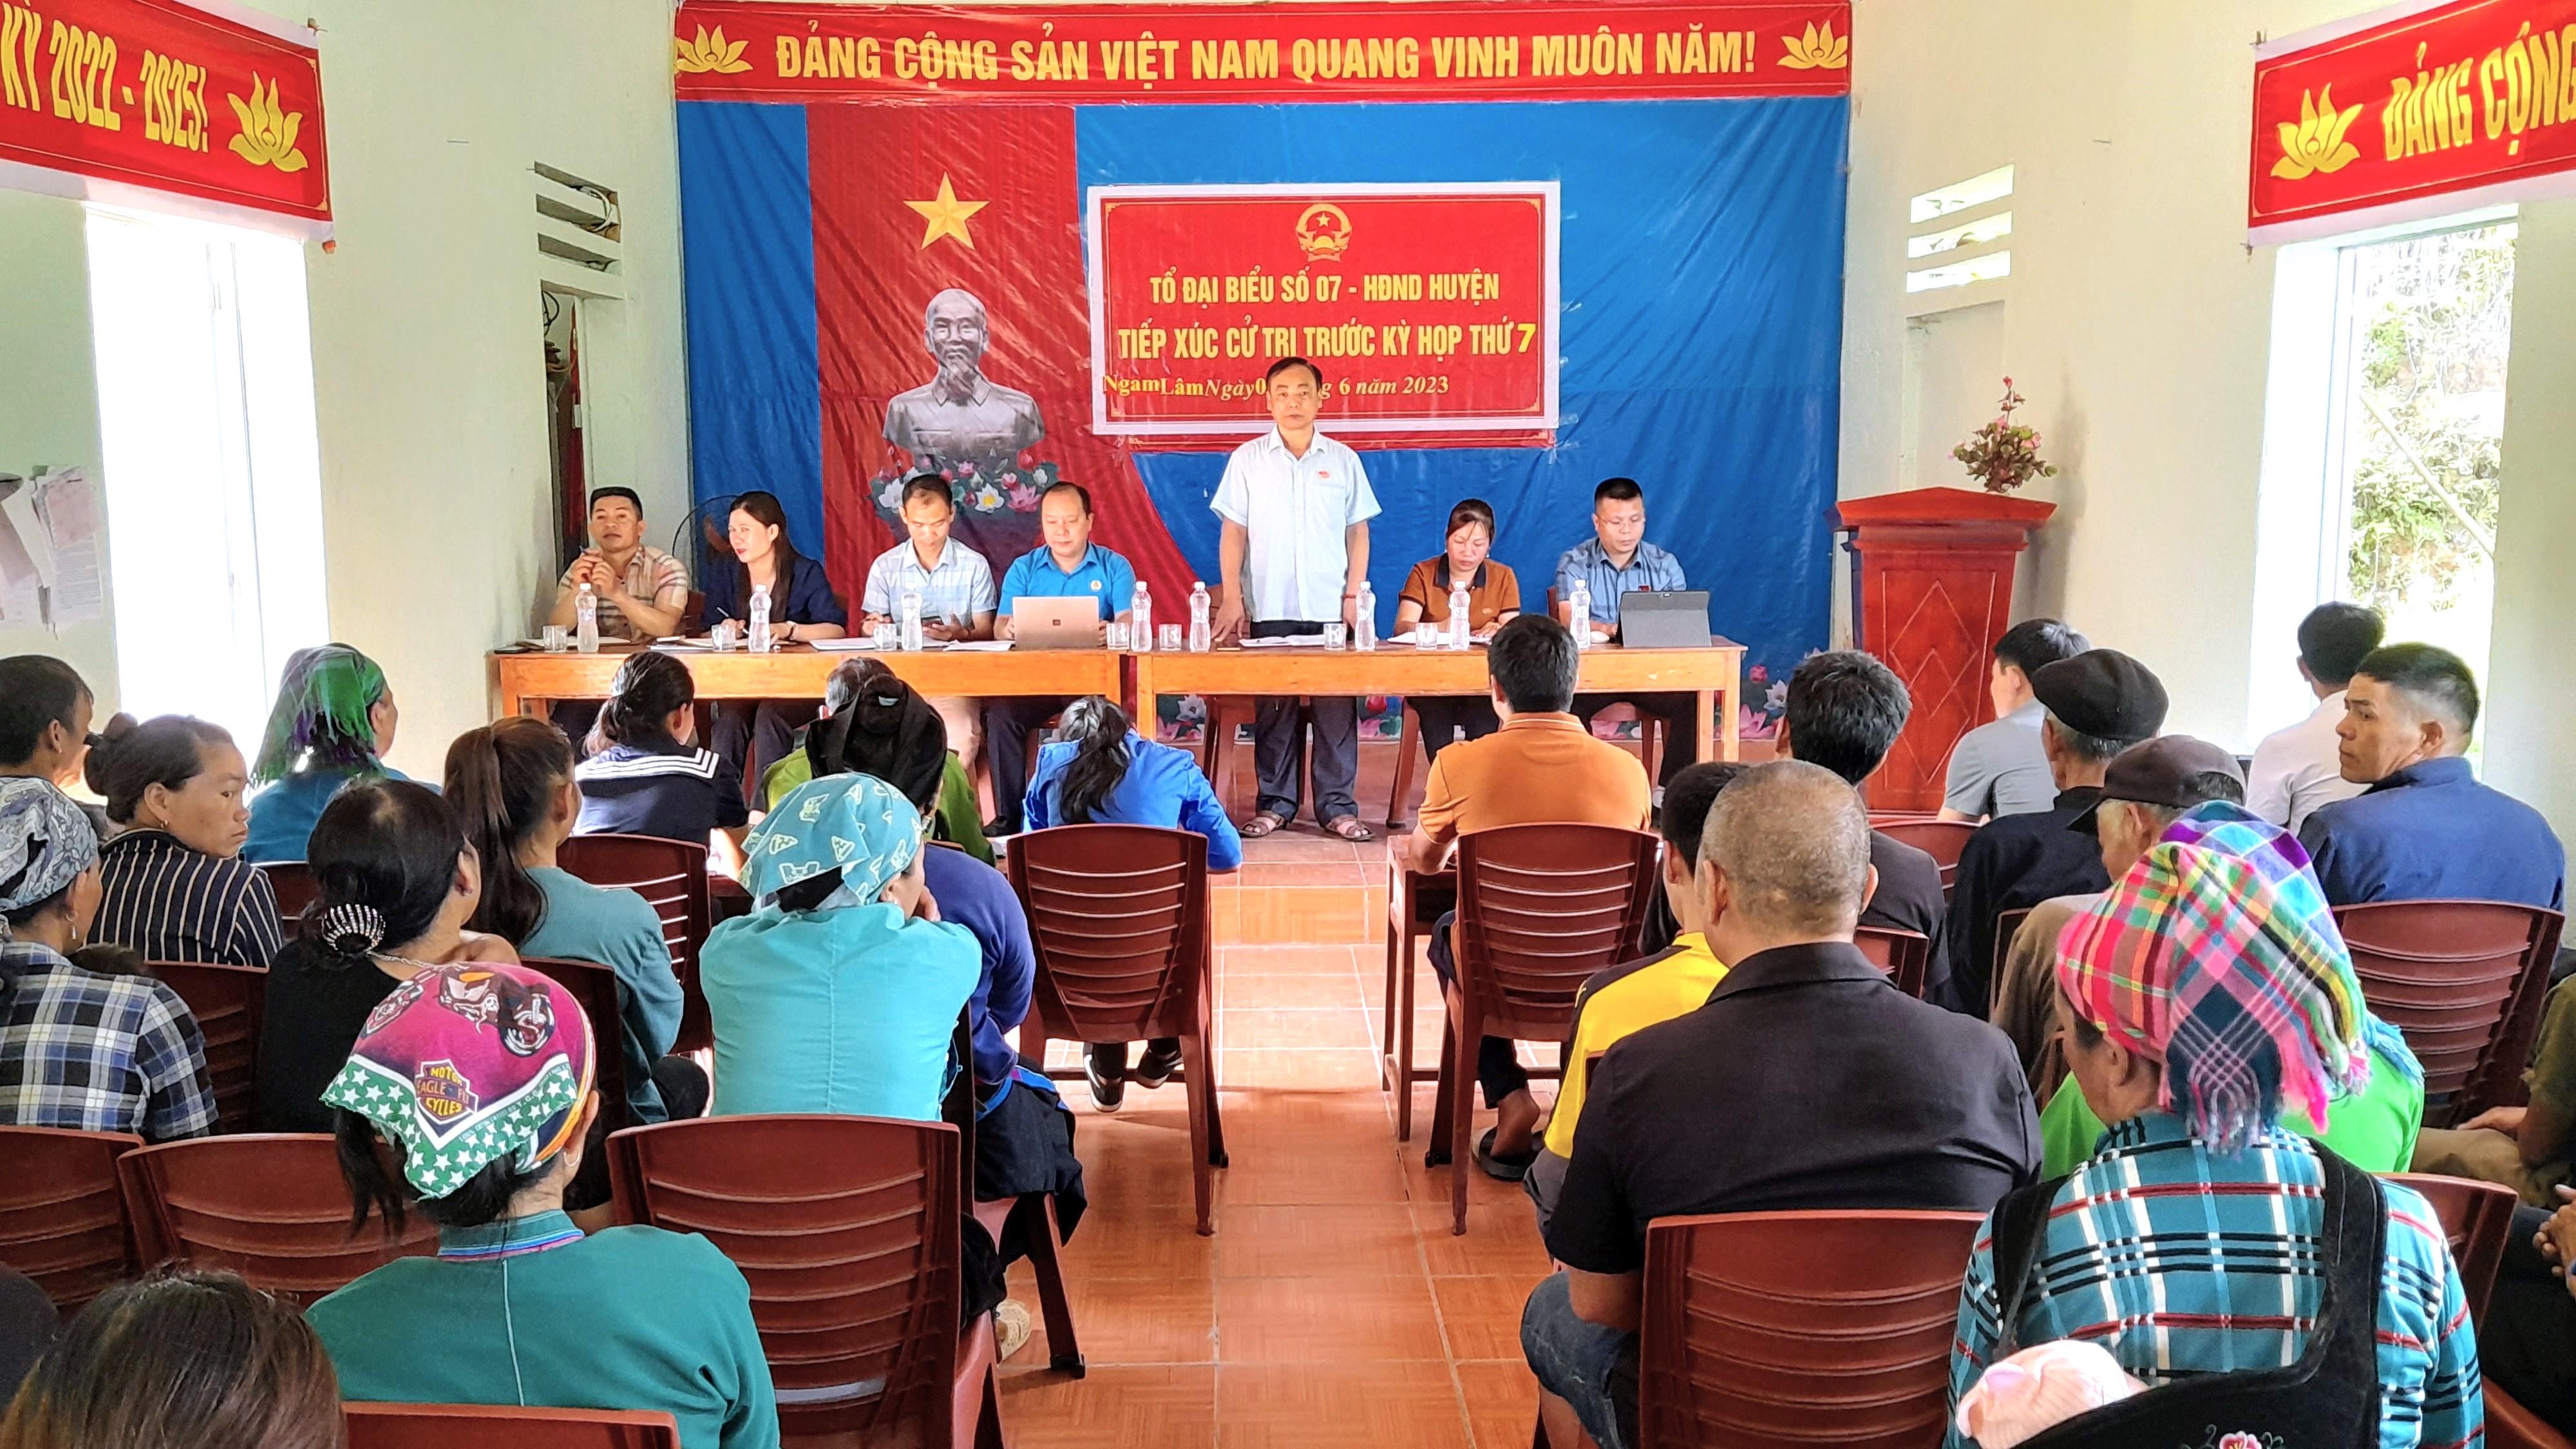 Tổ Đại biểu số 7 - Hội đồng nhân dân huyện Xín Mần tiếp xúc cử tri tại xã Nấm Dẩn